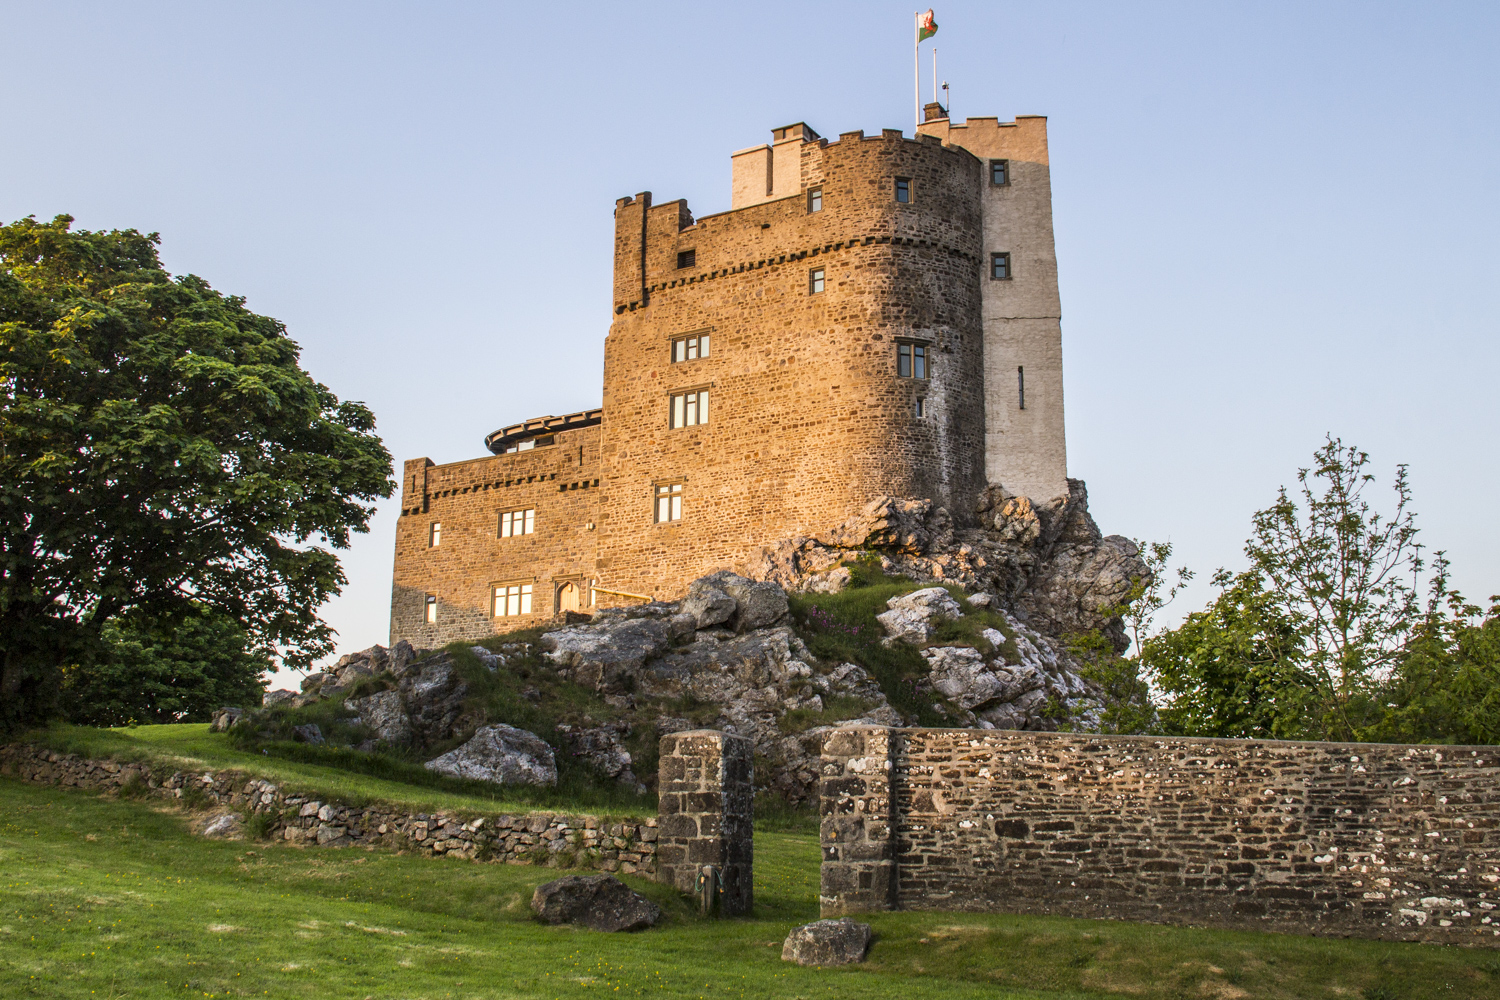 Roch Castle in Pembrokeshire, Wales